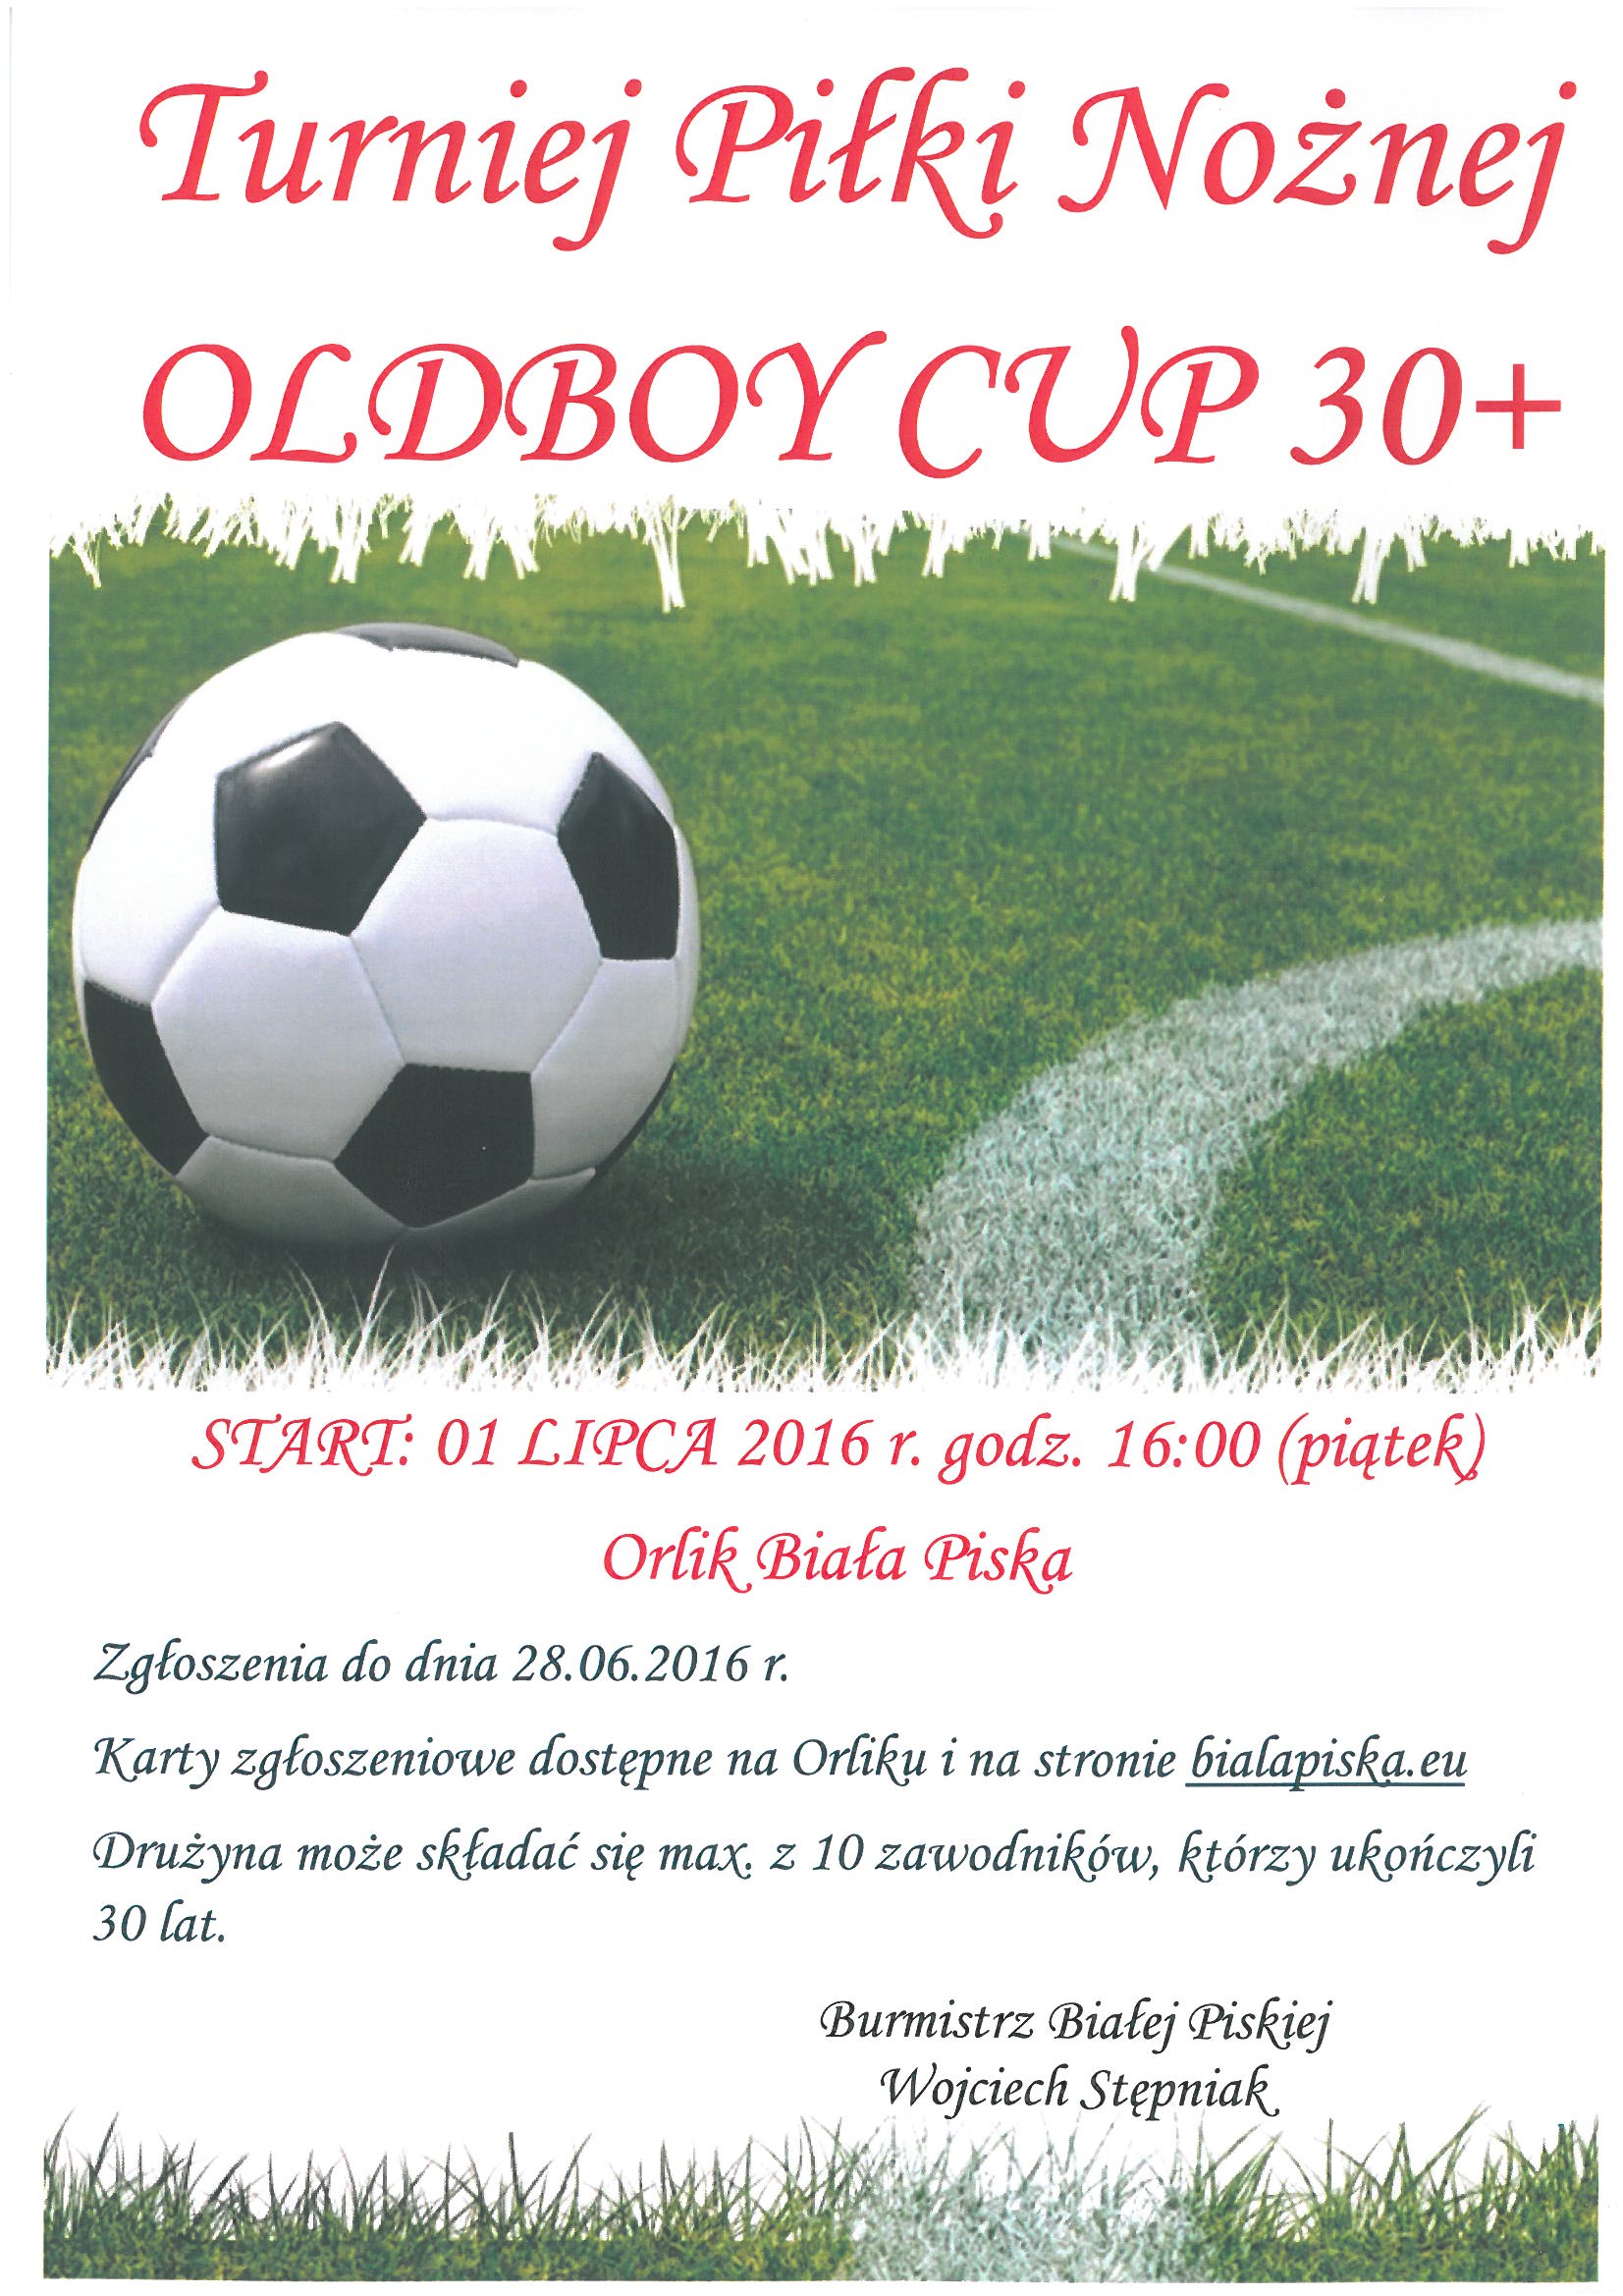 Turniej OLDBOY CUP 30+